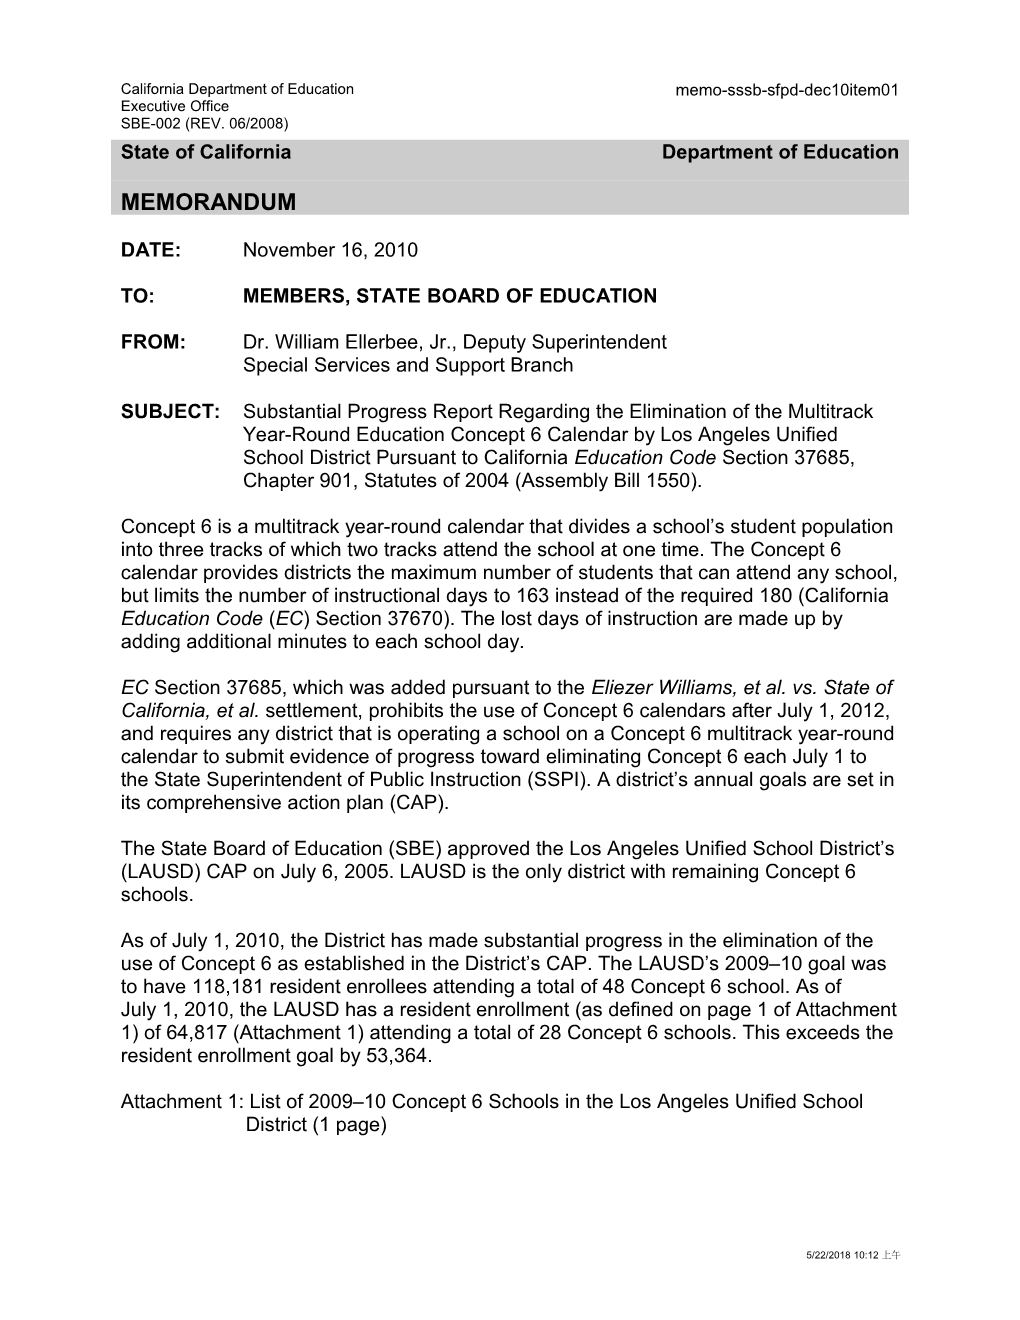 December 2010 Memorandum Item 1 - Information Memorandum (CA State Board of Education)